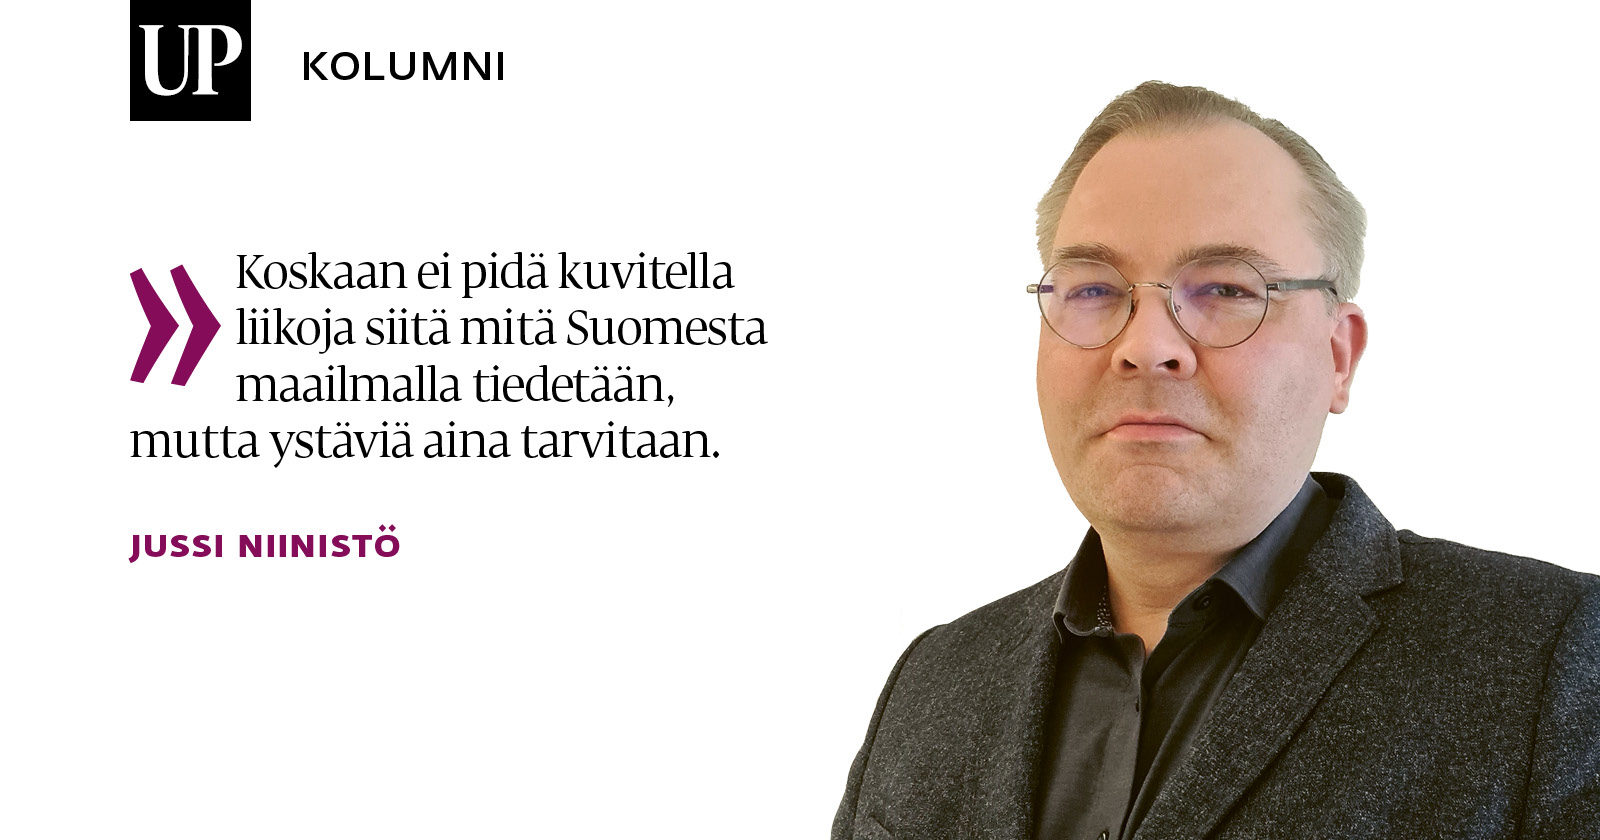 ulkopolitiikka.fi